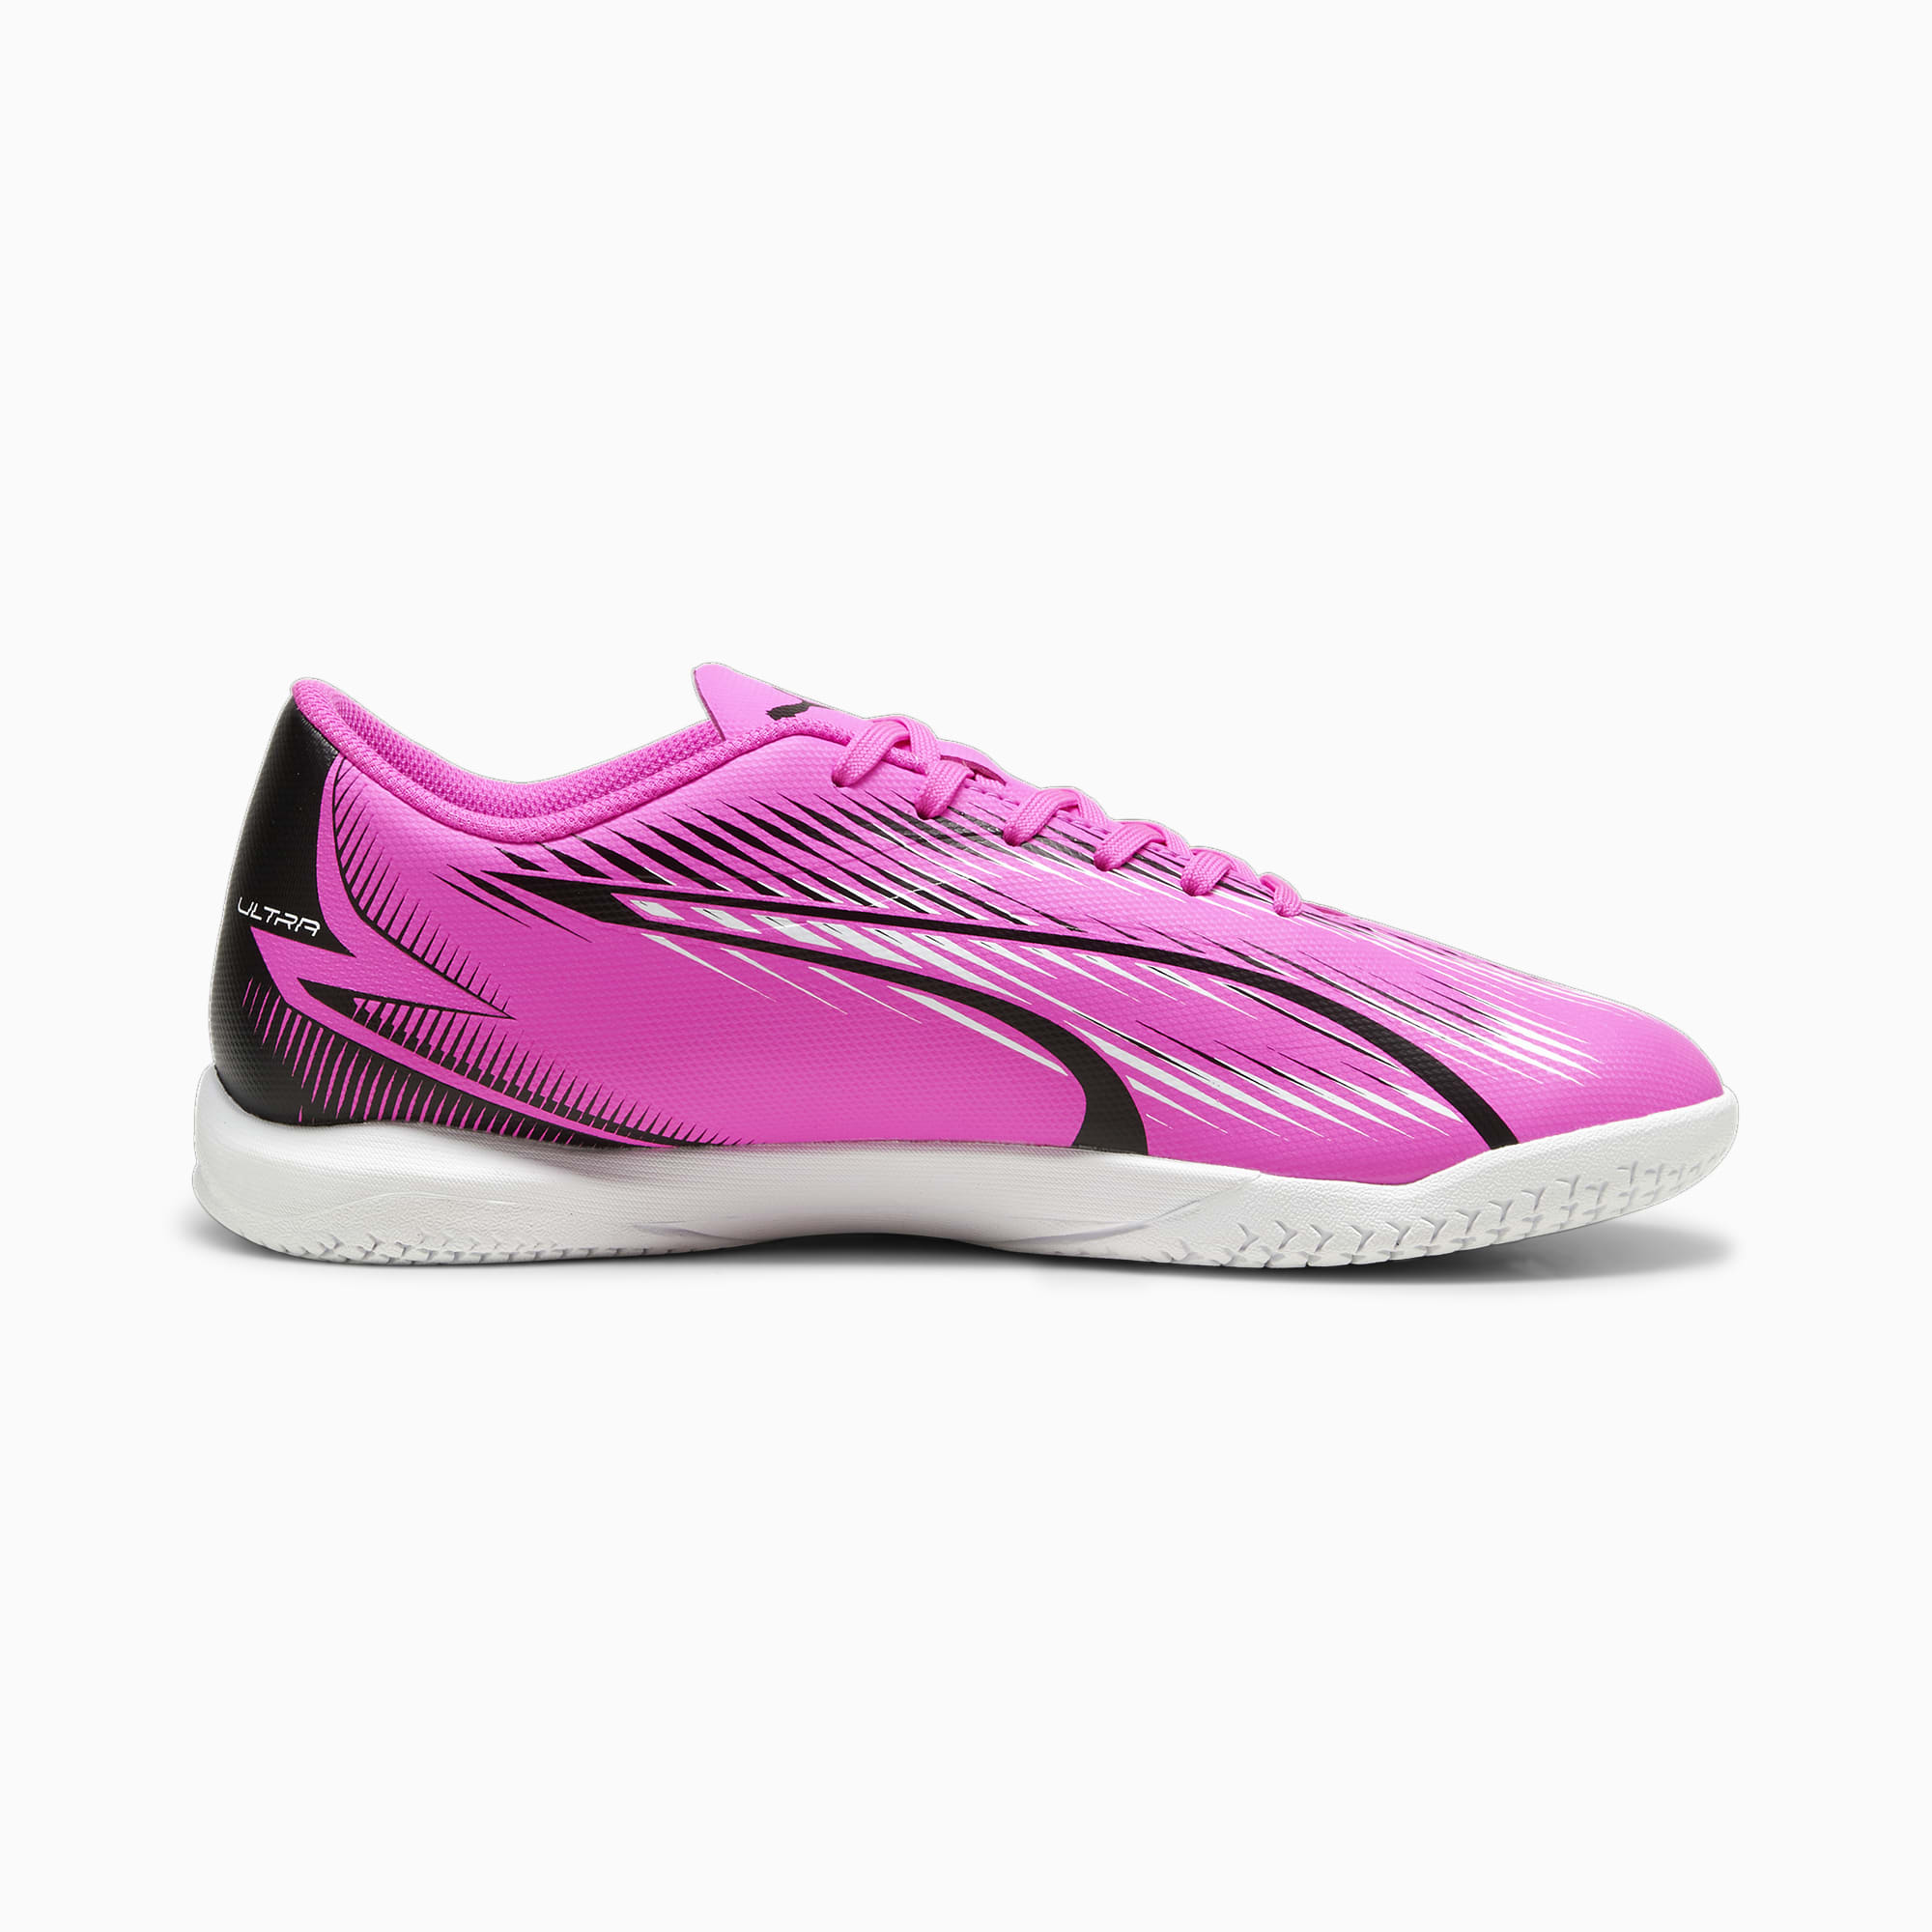 PUMA Chaussures De Futsal ULTRA PLAY, Rose/Noir/Blanc